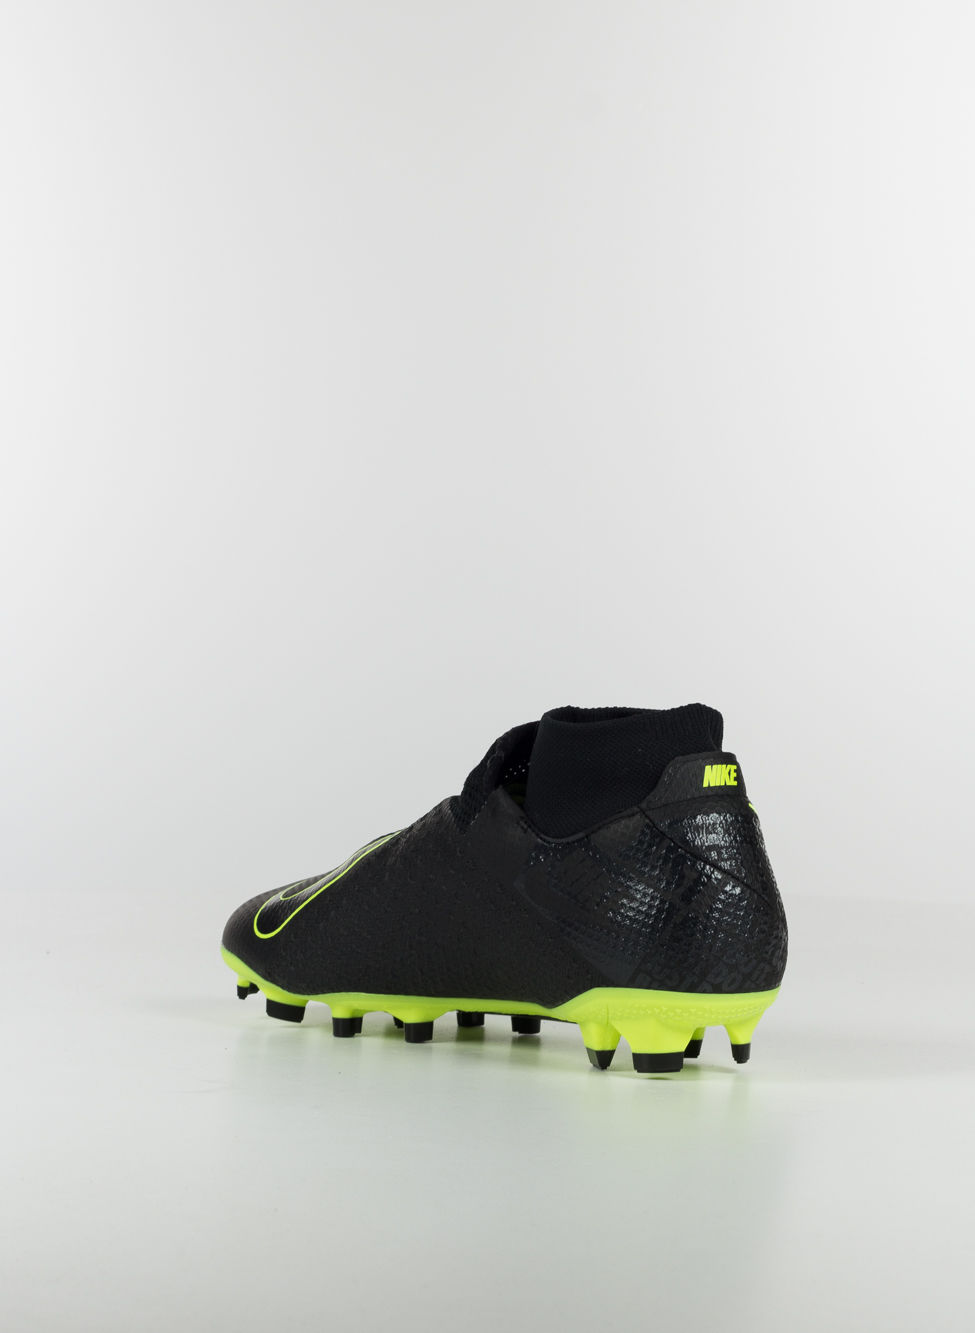 Nike Phantom Venom Pro Mens FG Football Boots £ 75.00